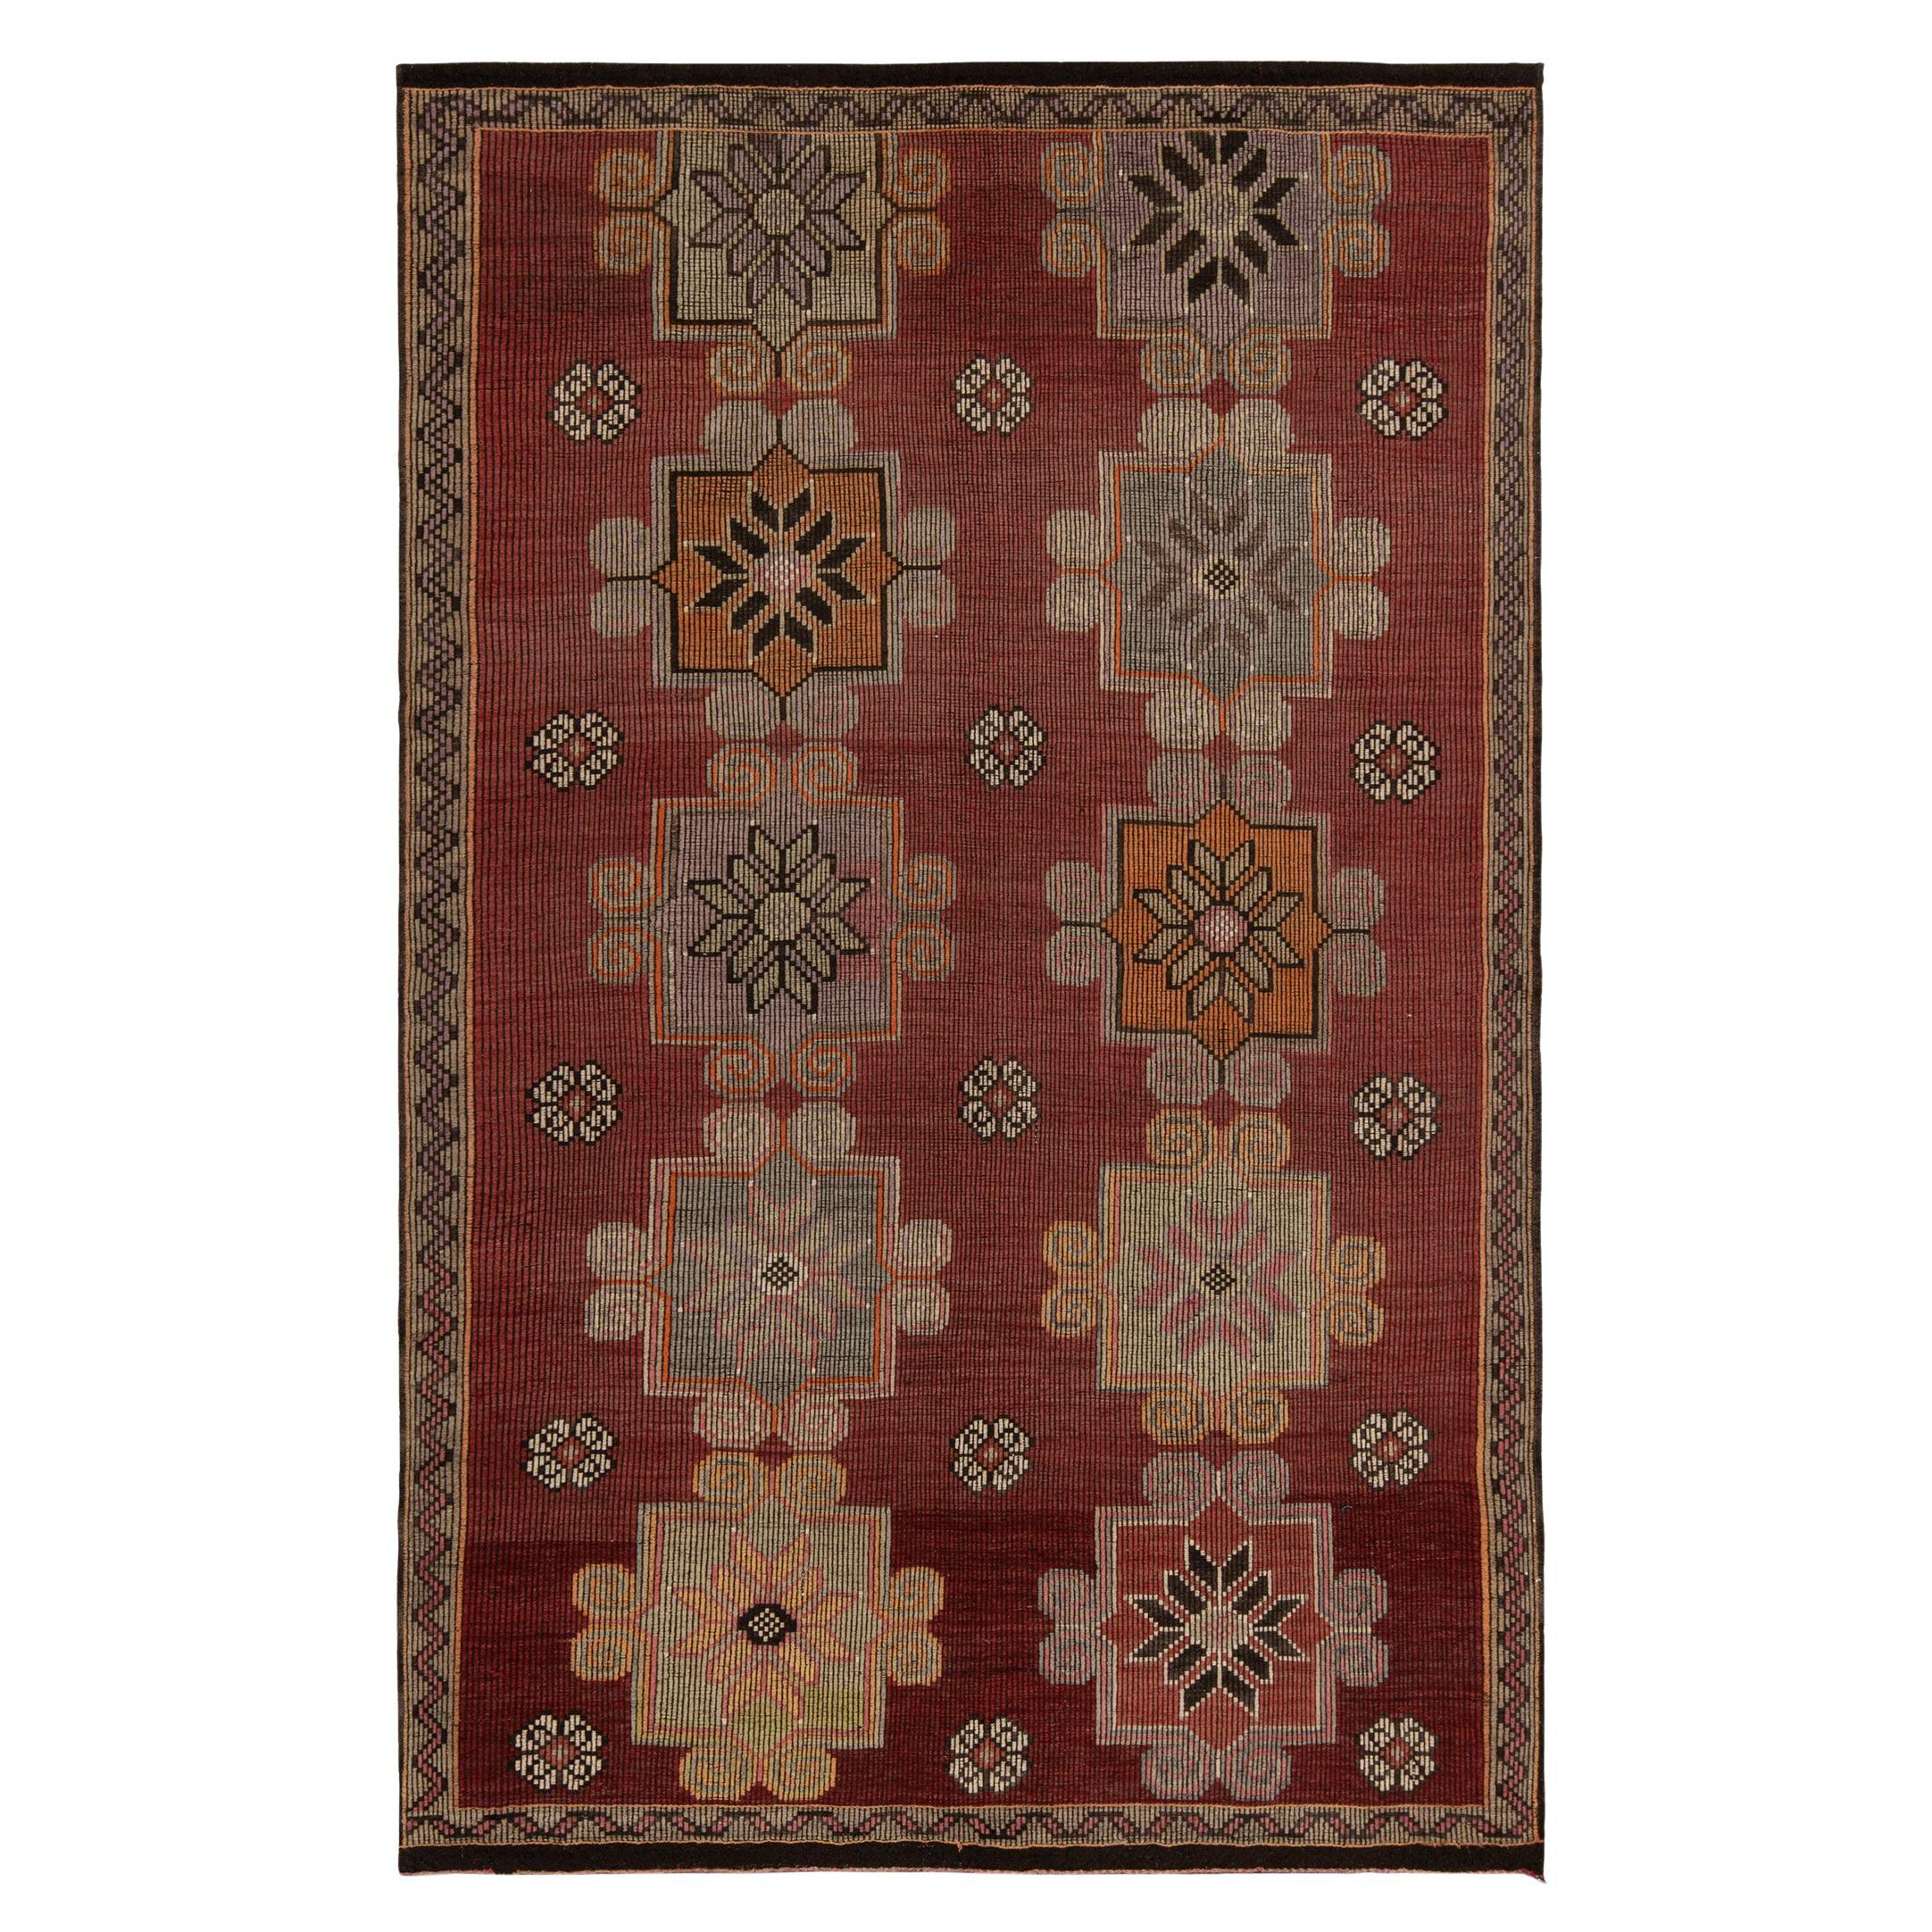 Vintage Kilim Rug in Red, Brown Tribal Geometric Floral Pattern by Rug & Kilim For Sale